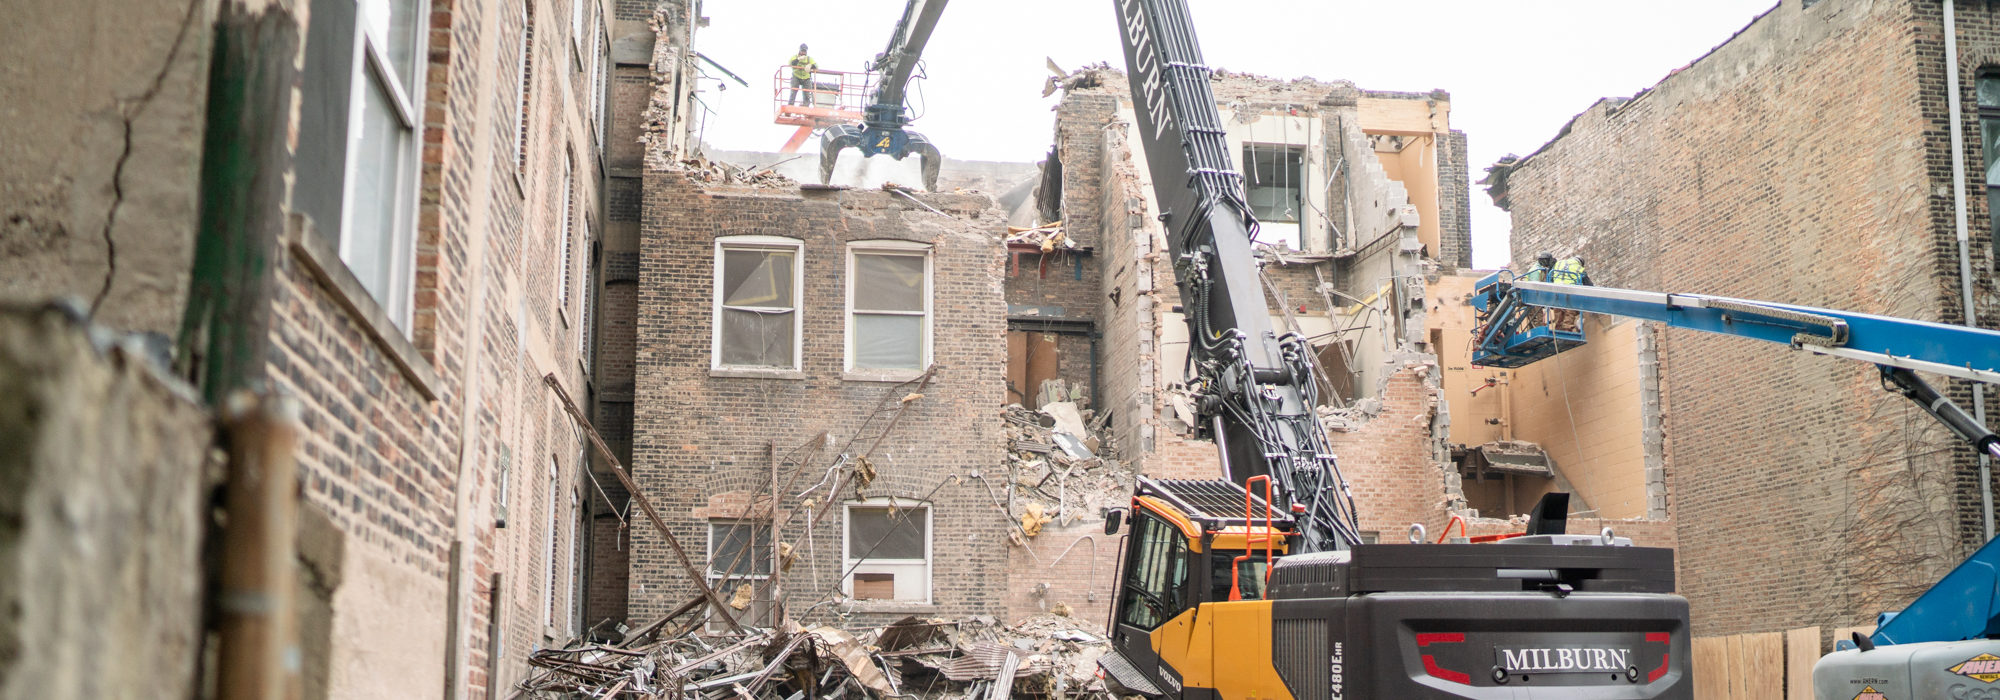 Milburn Demolition works at Jefferson Park Hospital